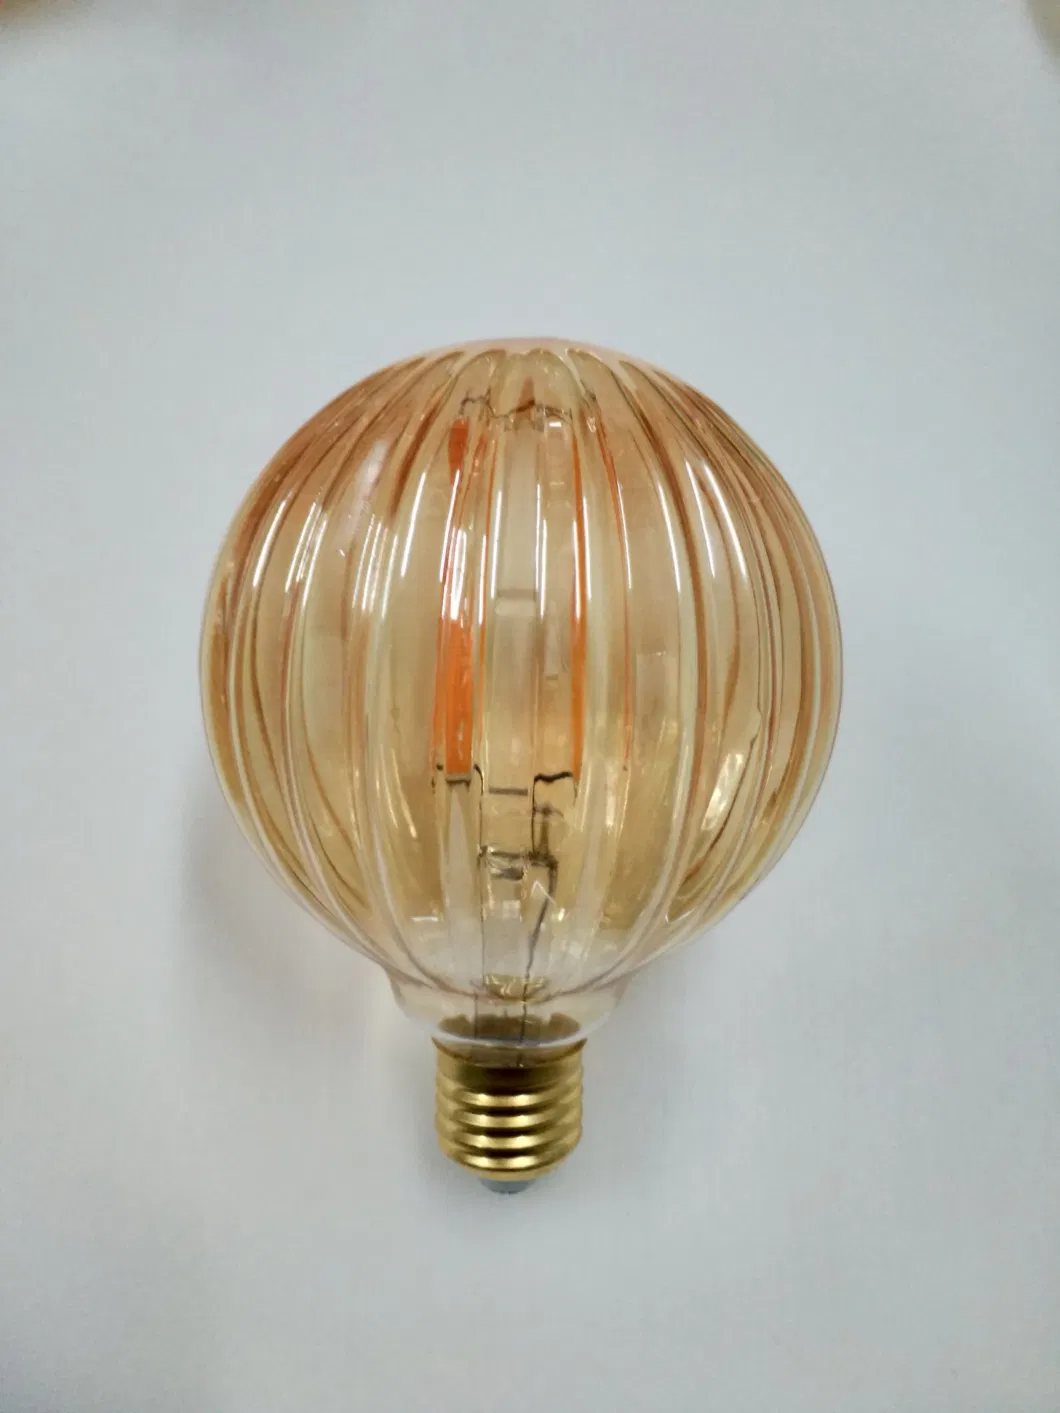 LED Candle Energy Saving Light C35 G45 Edison Decorative Antique Lighting Vintage Bulb Light Lamp E27 E14 B22 B15 Filament Golf Bulb